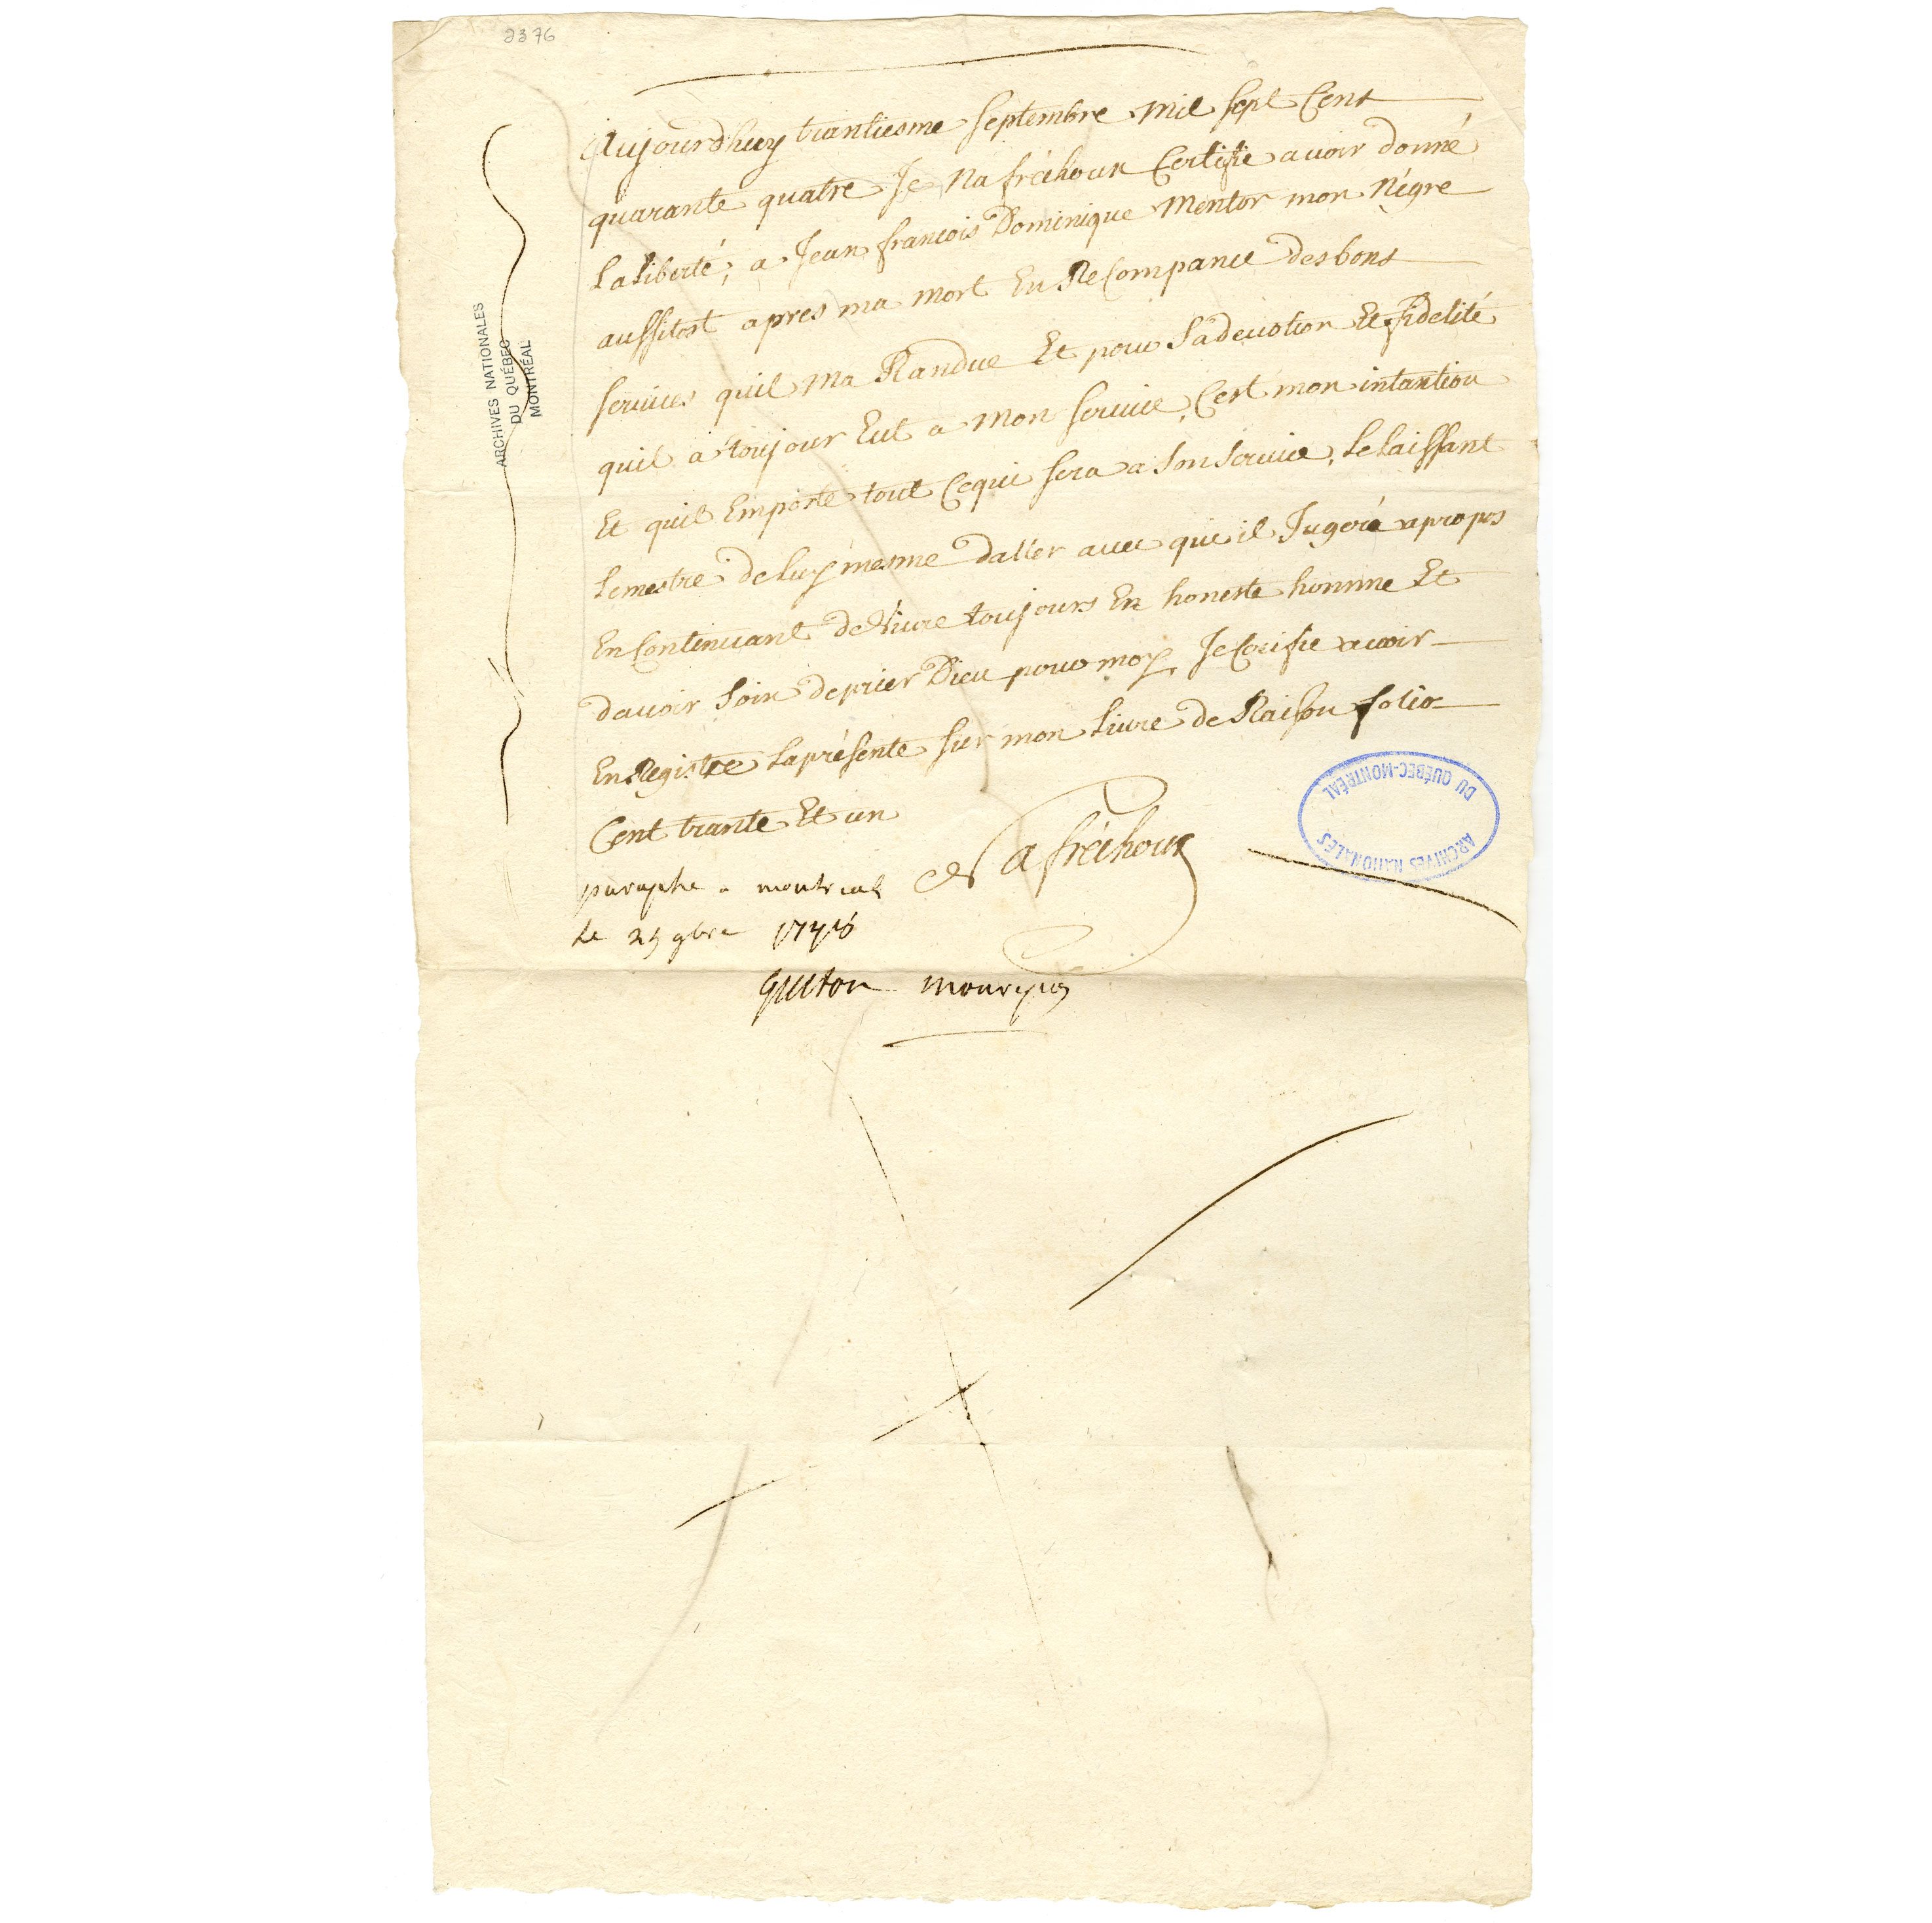 Ancien document avec du texte en français écrit à la main à l’encre noire.